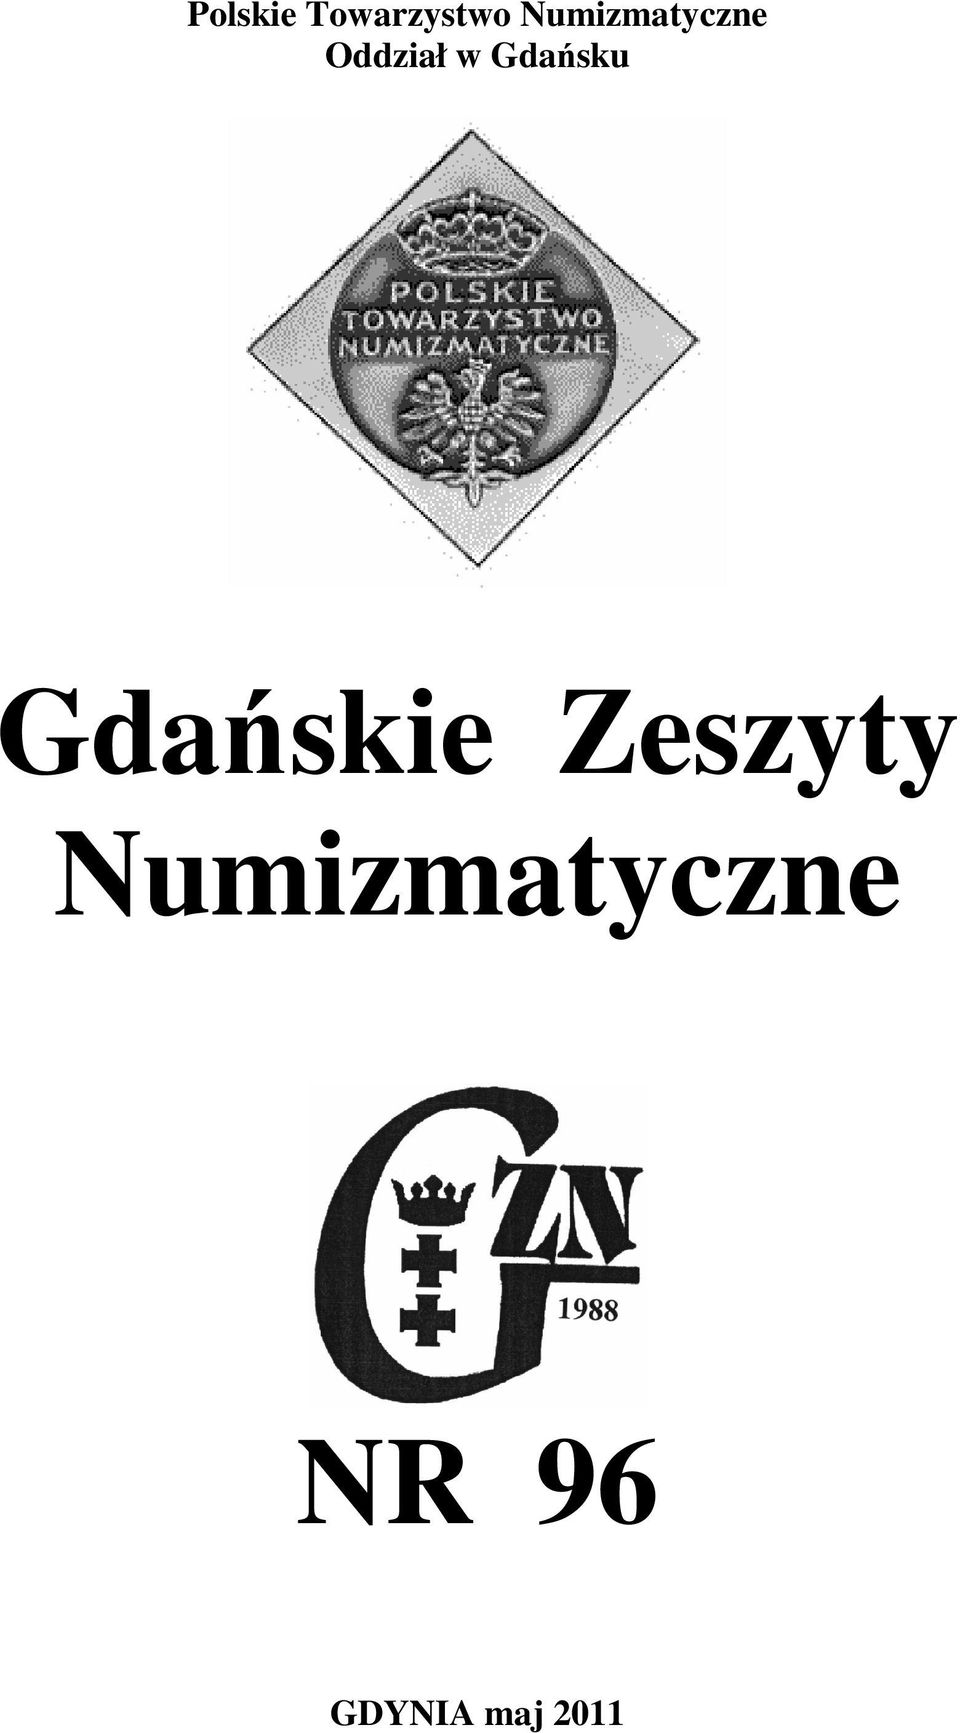 Gdańsku Gdańskie Zeszyty